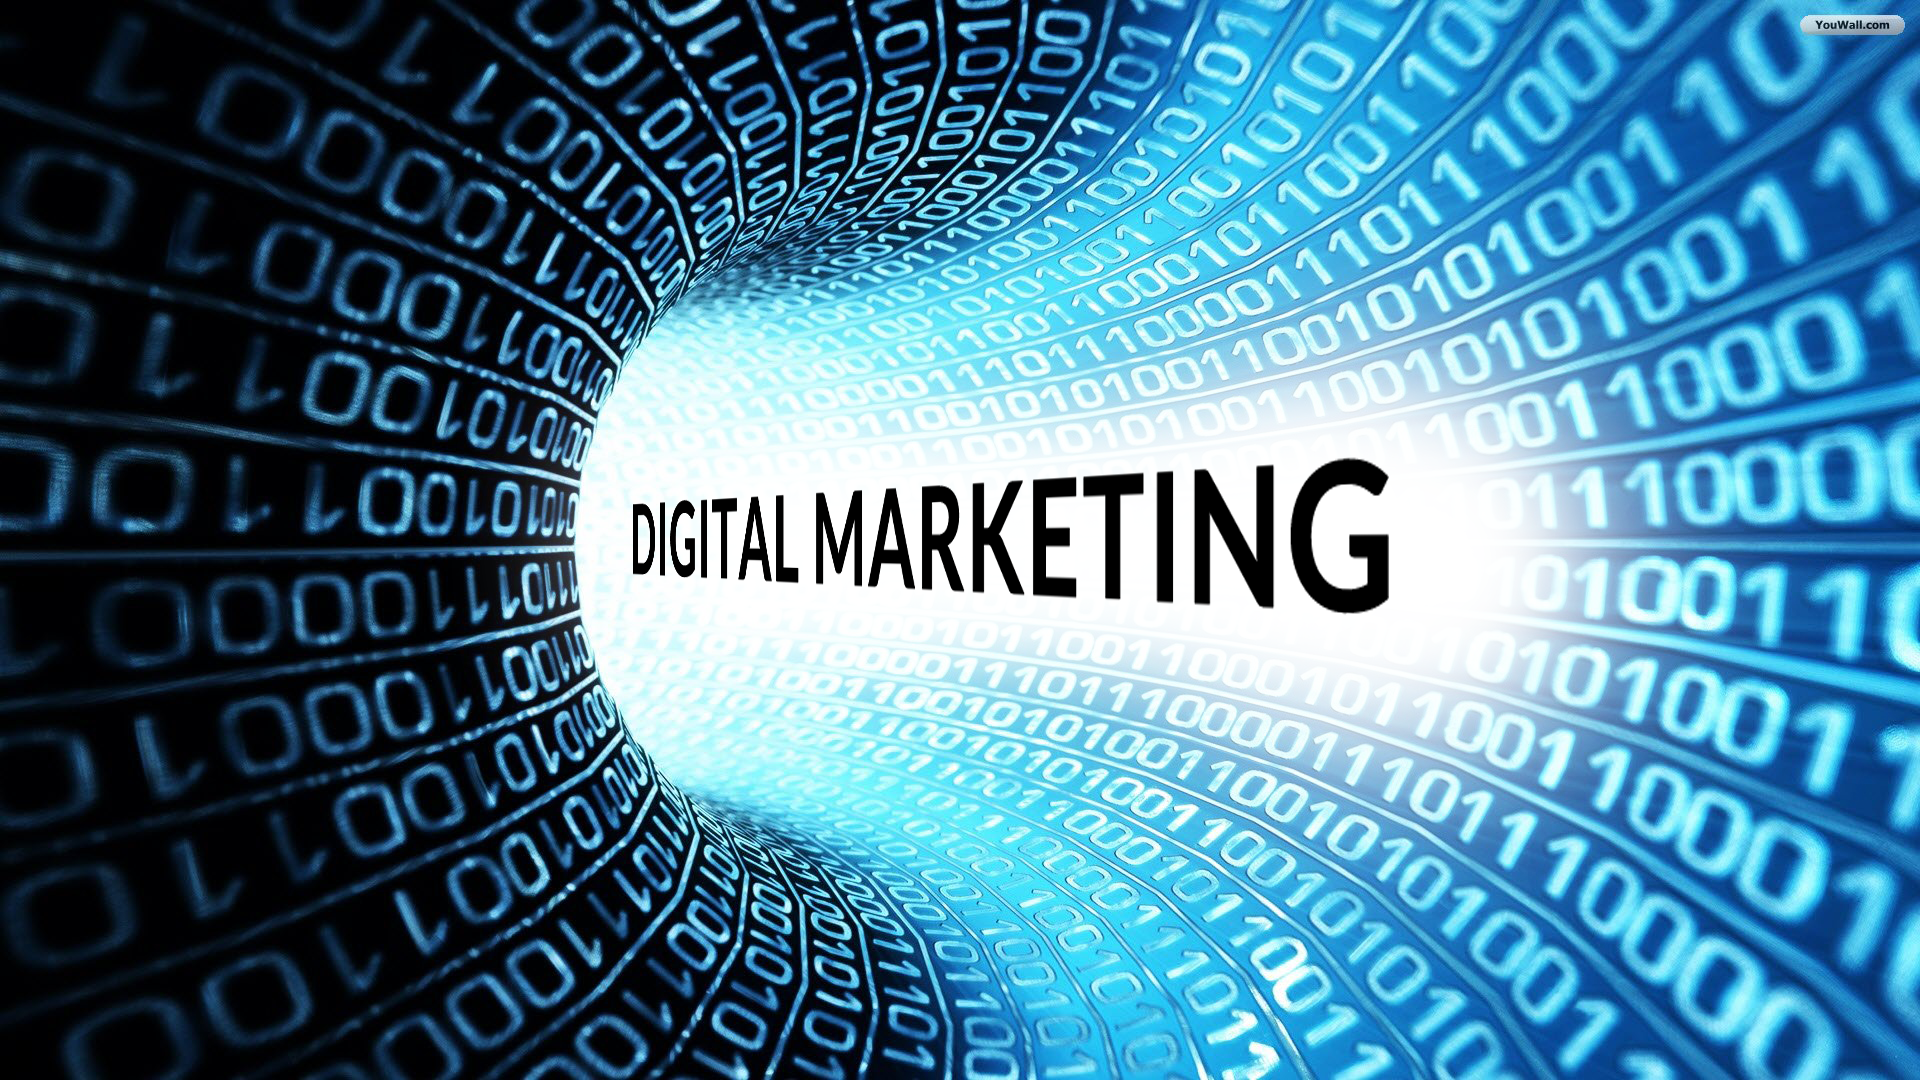 Digital Marketing – The Way Forward